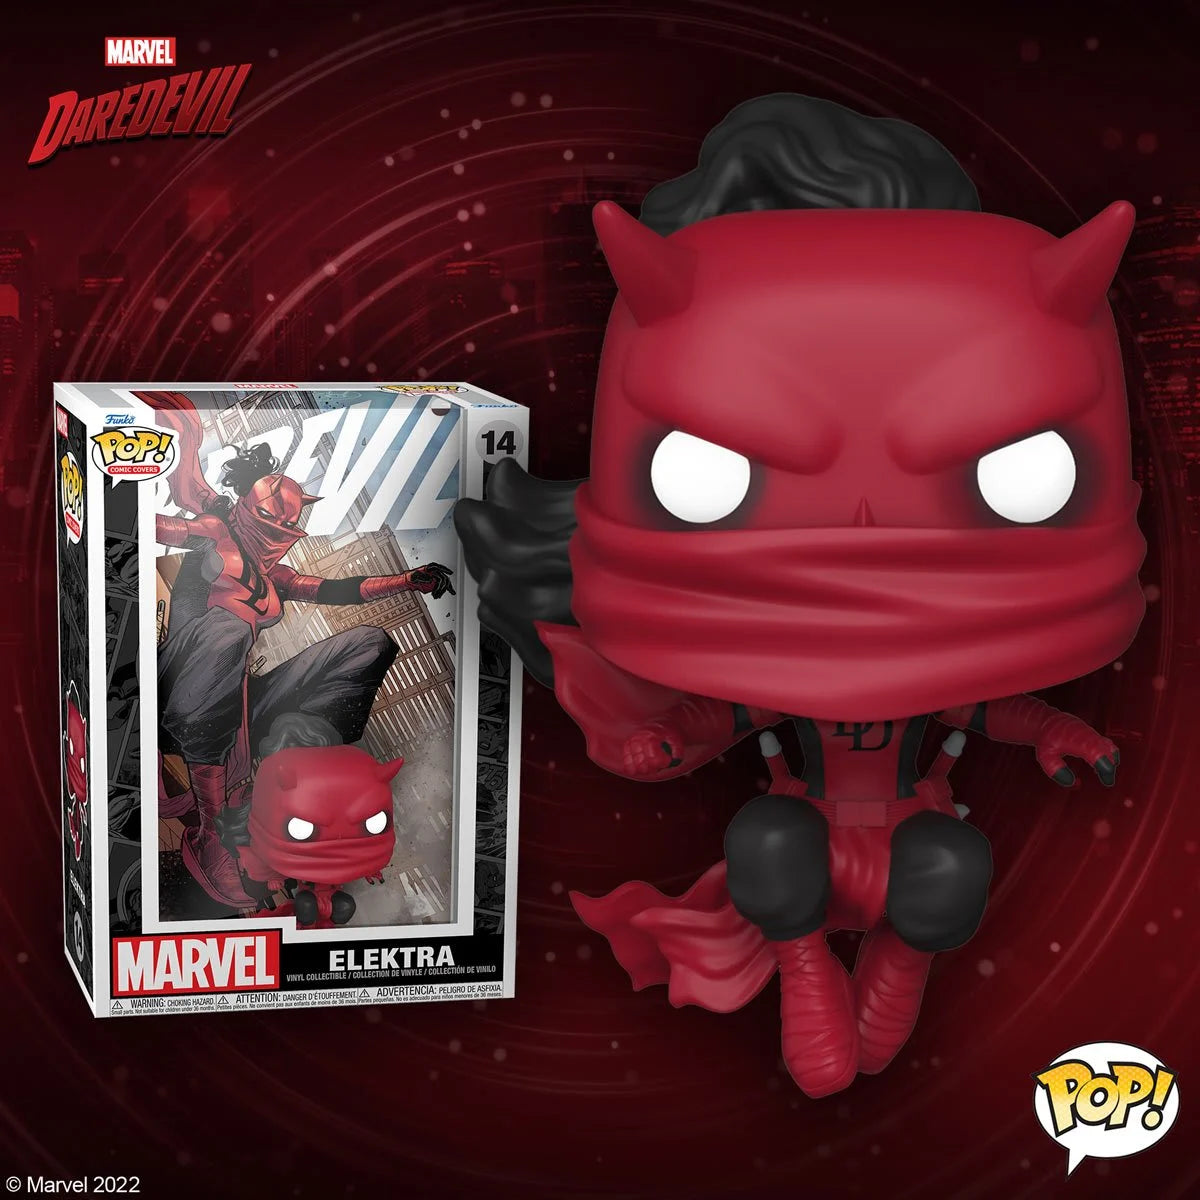 Elektra as Daredevil (Marvel) Comic Cover Funko Pop!